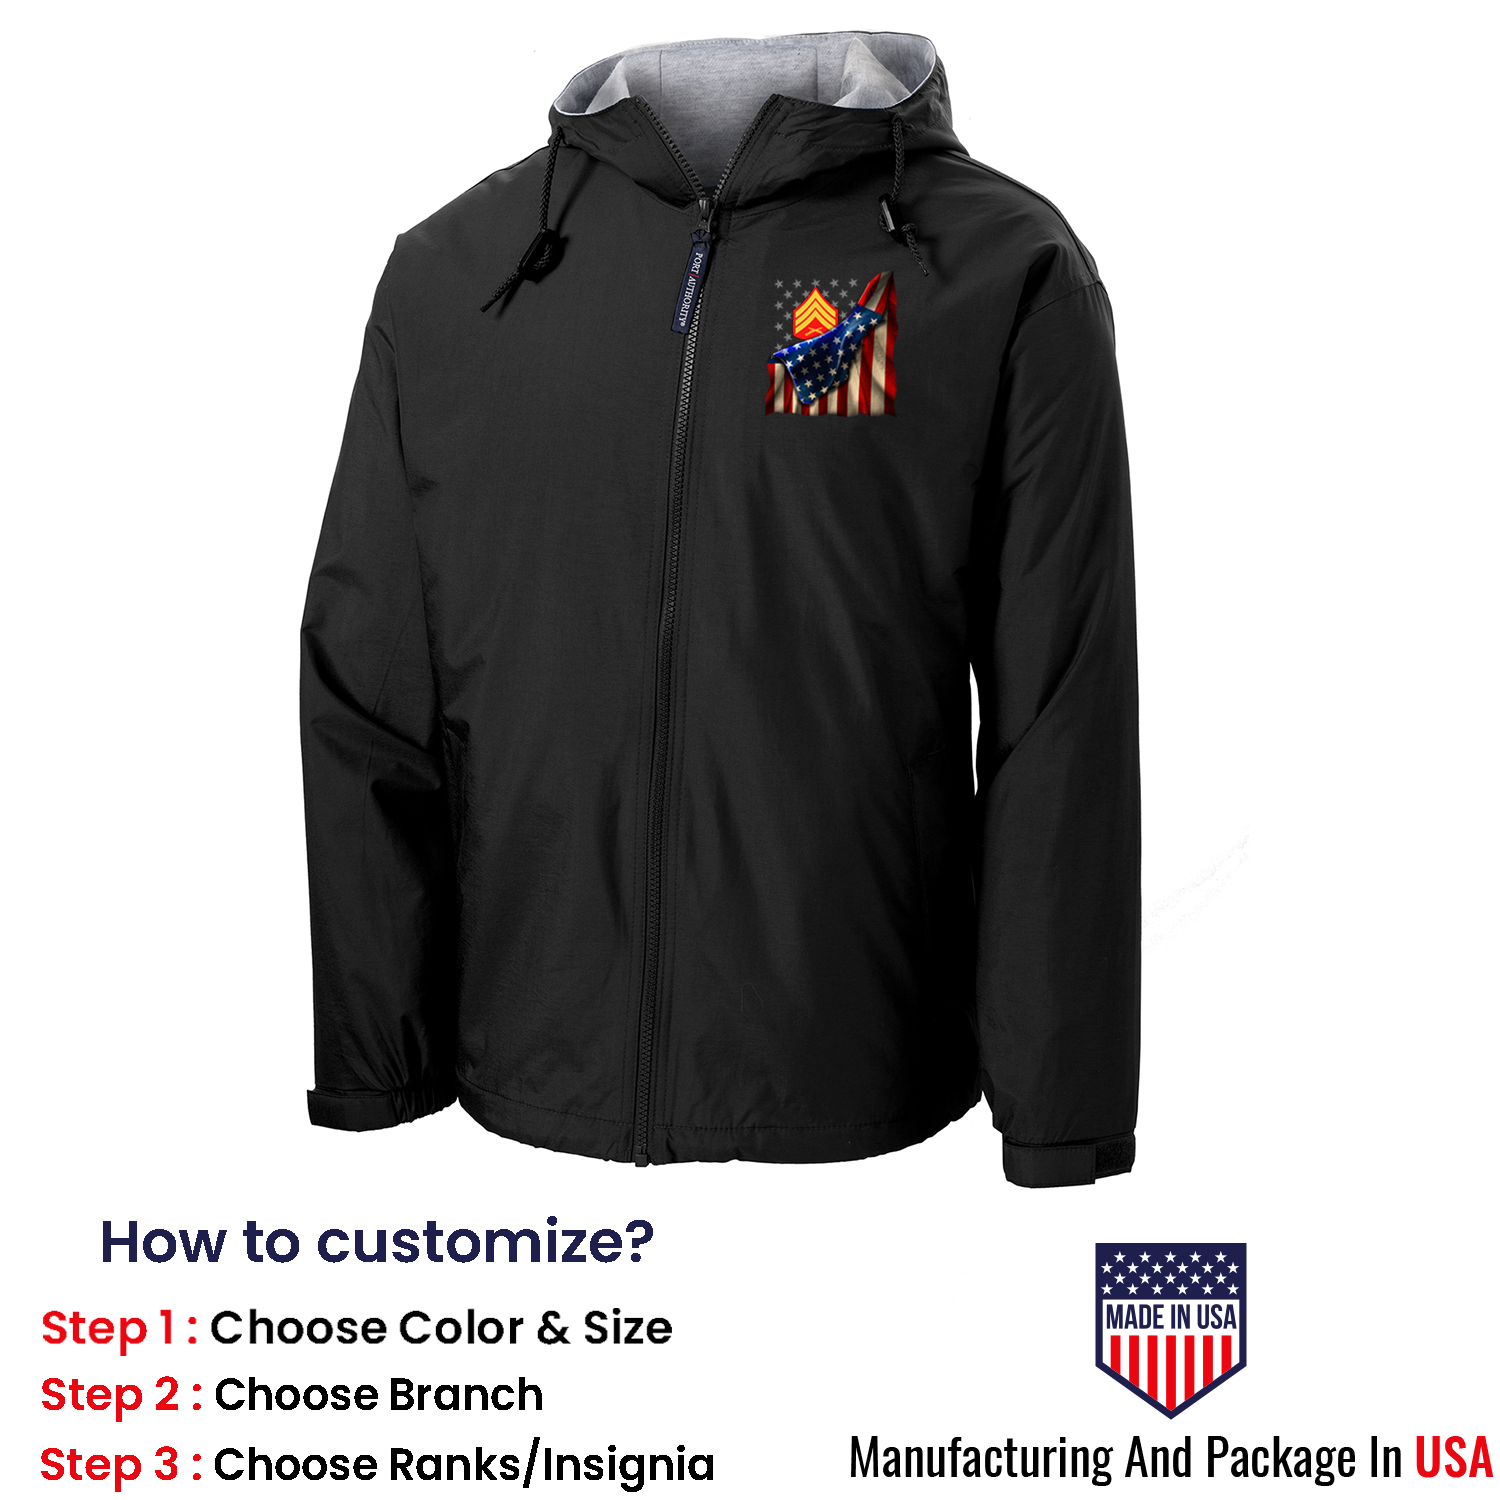 Custom US Marine Corps Ranks/Insignia, USA Flag, Print On Left Chest Team Jacket